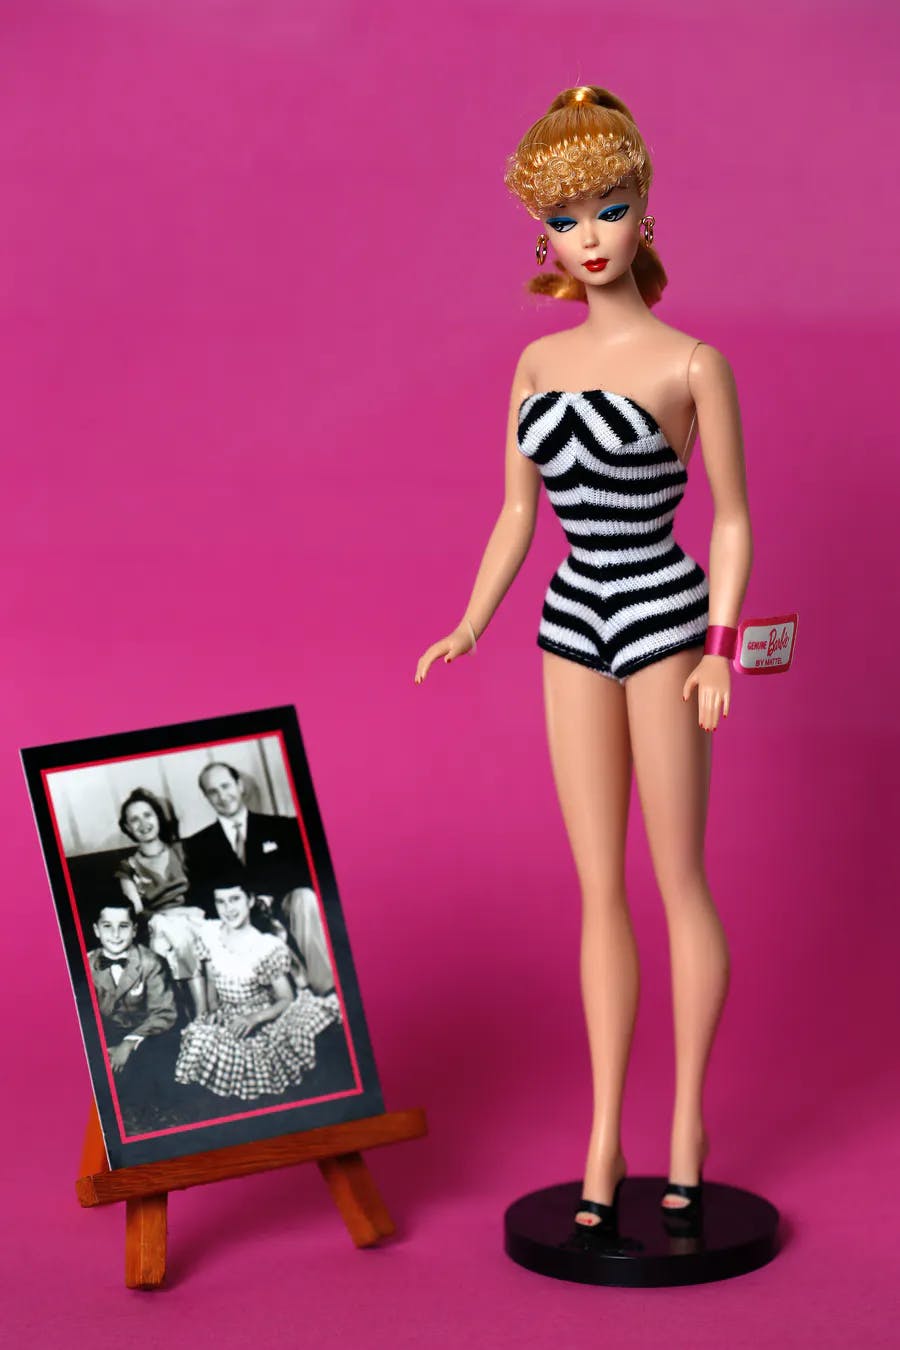 Maison de Barbie Mattel 1986 - jouets rétro jeux de société